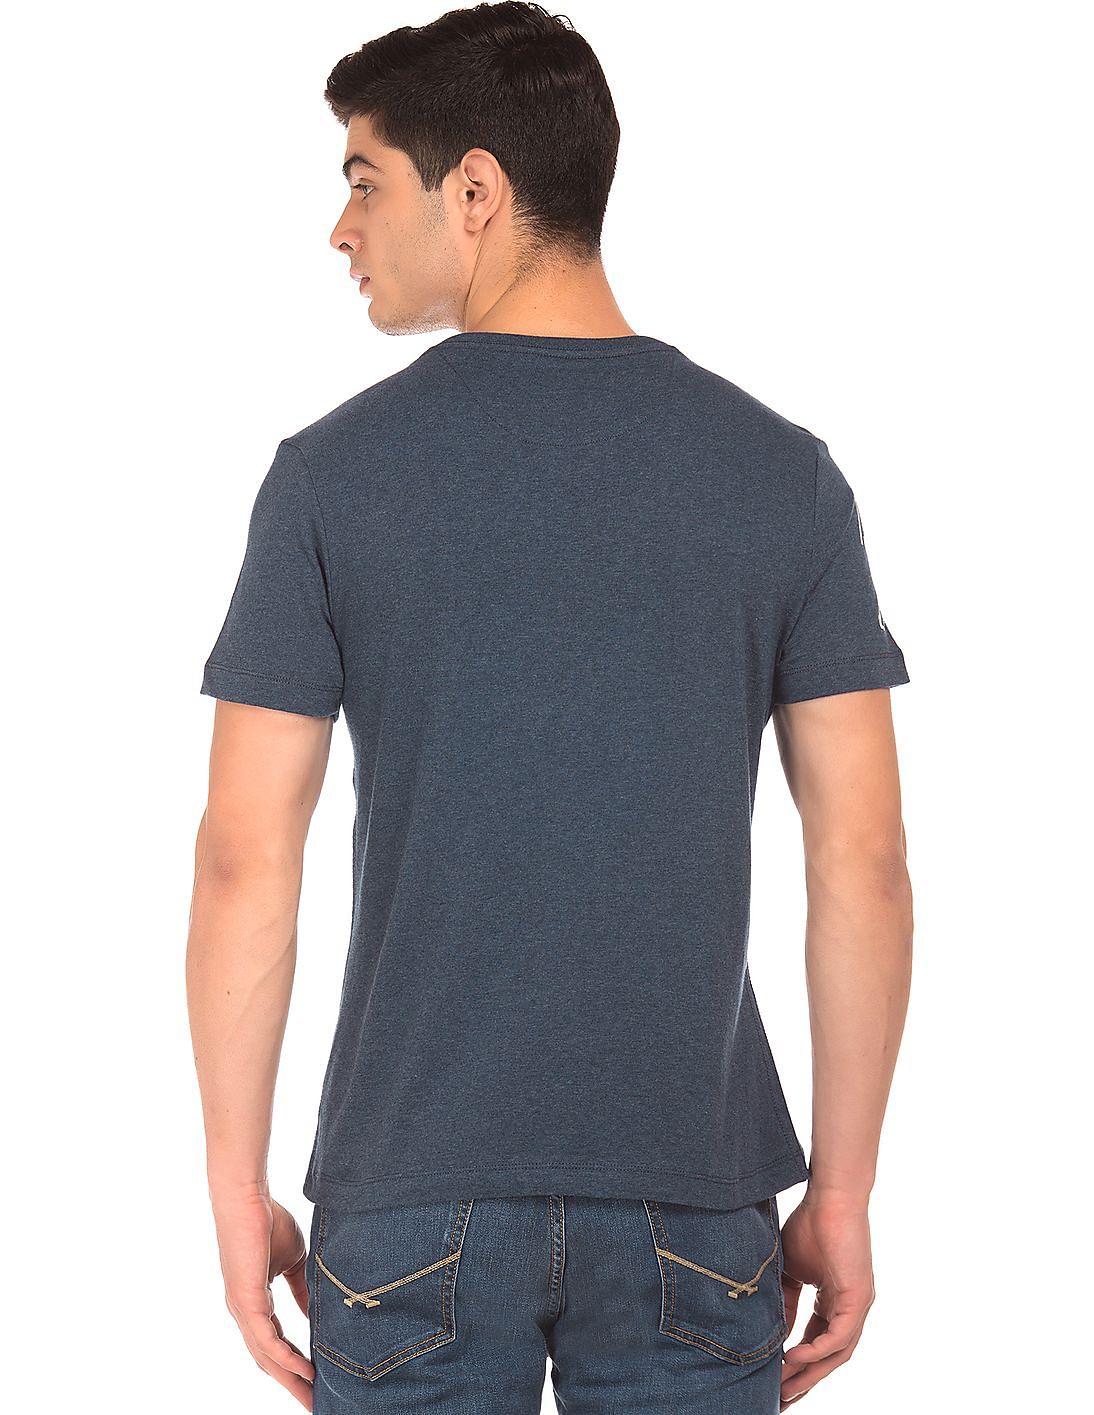 Short Sleeve Staple Tri-Blend V-Neck Tee Shirt 